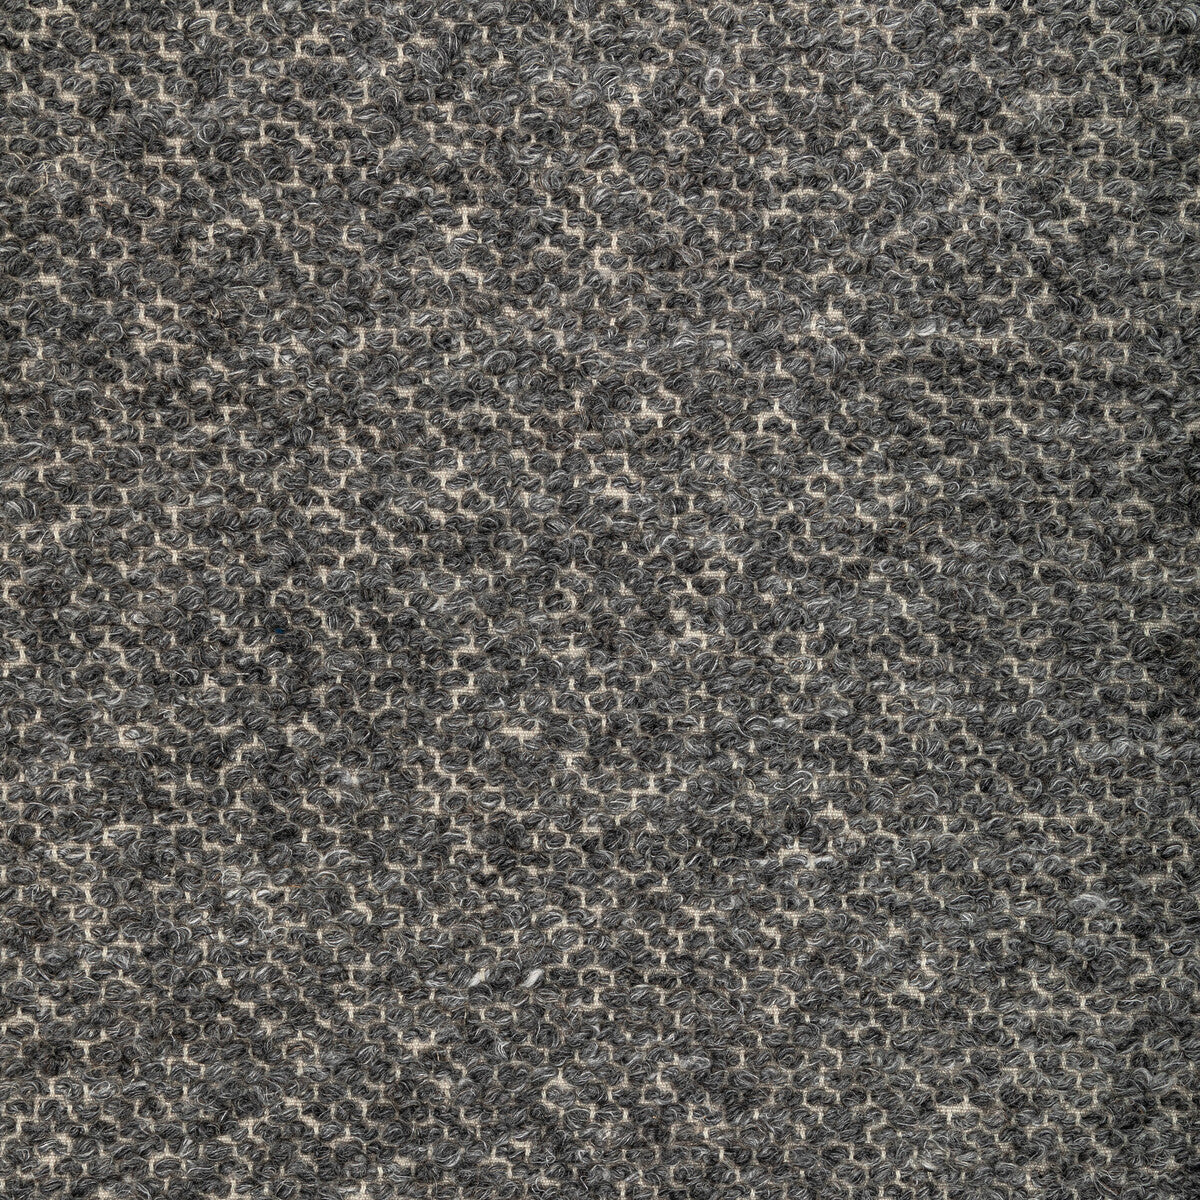 Kravet Design fabric in 36347-52 color - pattern 36347.52.0 - by Kravet Design